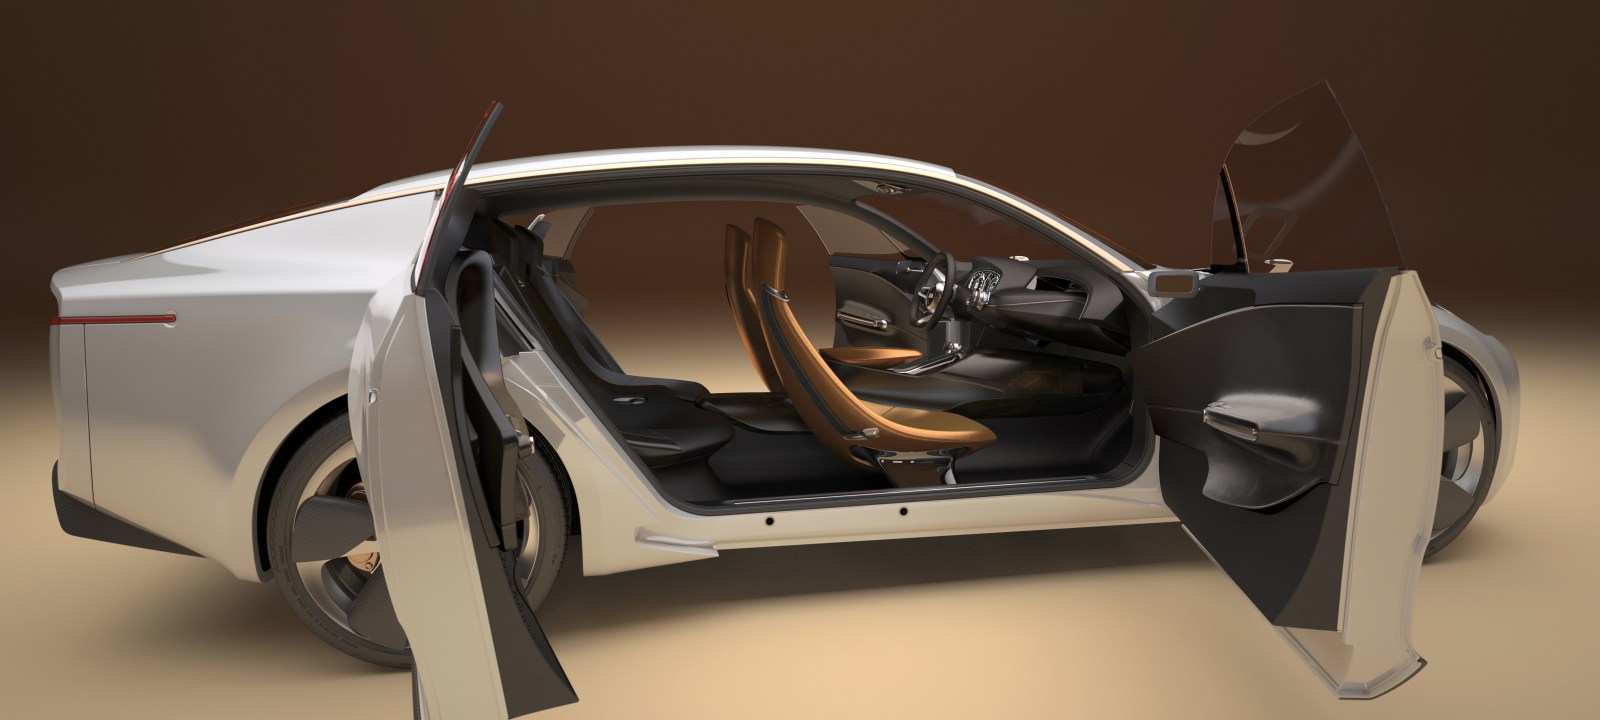 Kia GT Concept, una ligera idea de como será el Kia K9